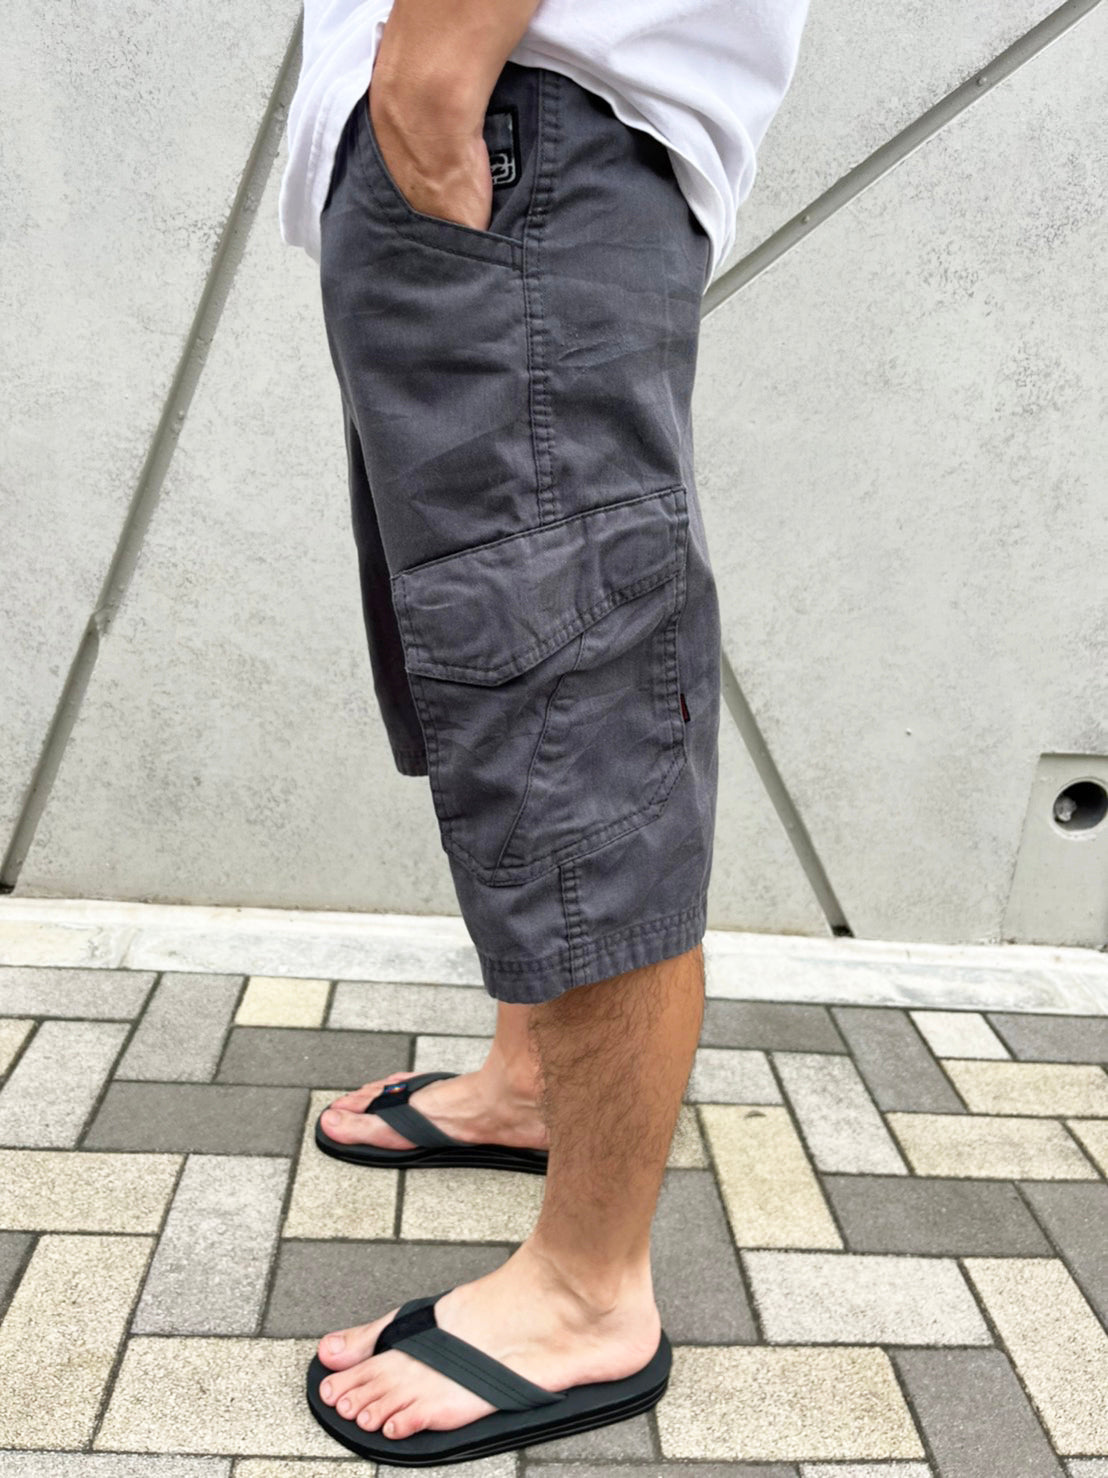 【Billabong】90's billabong vintage surf Short pants  無地 ショートパンツ カーゴショーツ (size 33)